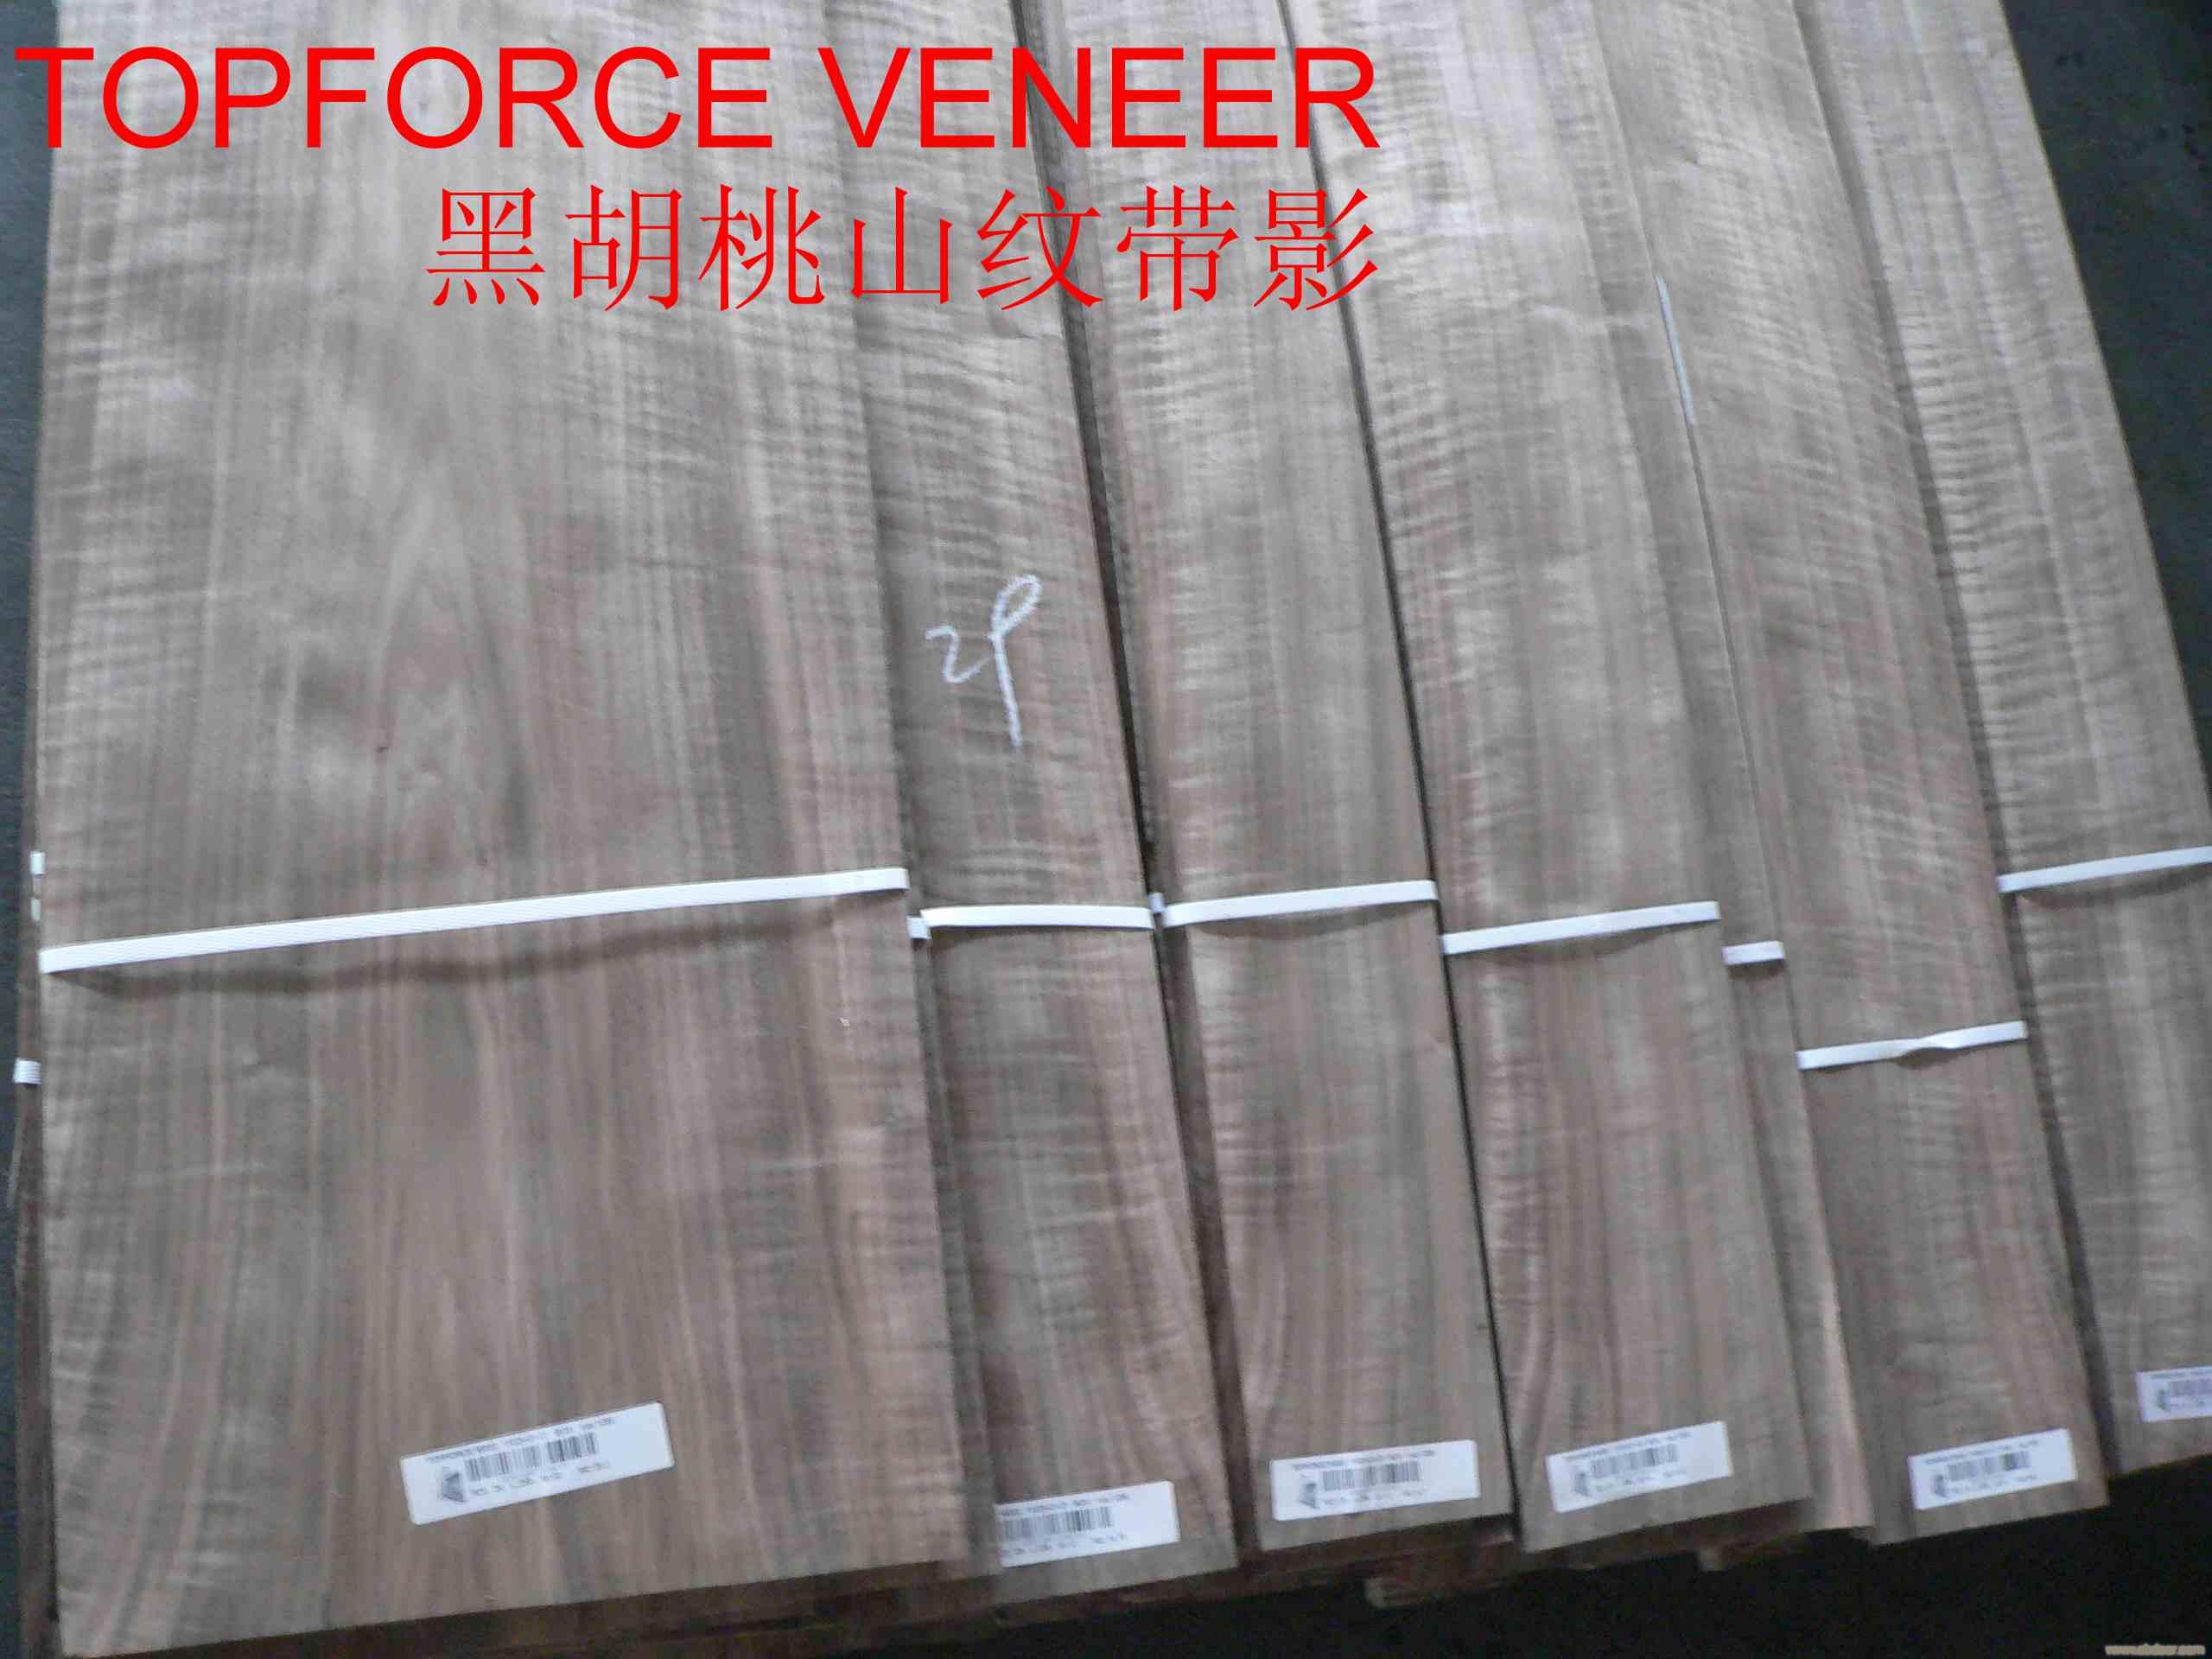 上海黑胡桃强影家具级 China ShangHai Walnut Strong Figure Furniture Grade Veneer